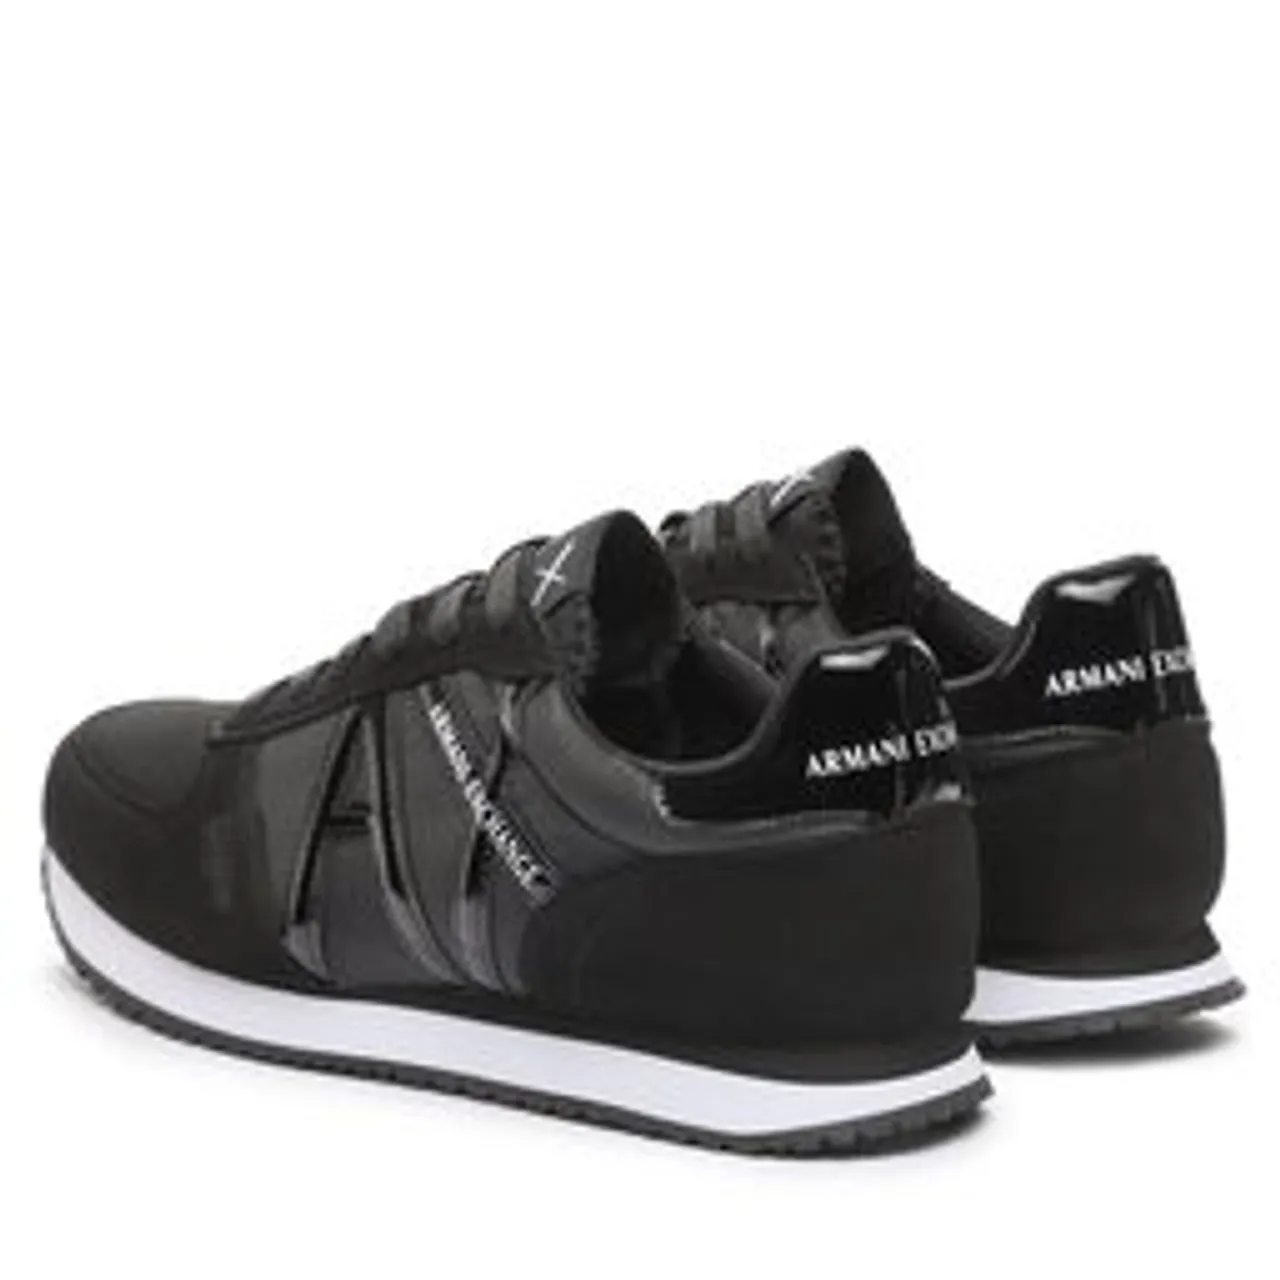 Sneakers Armani Exchange XDX031 XV137 K001 Blac+Black